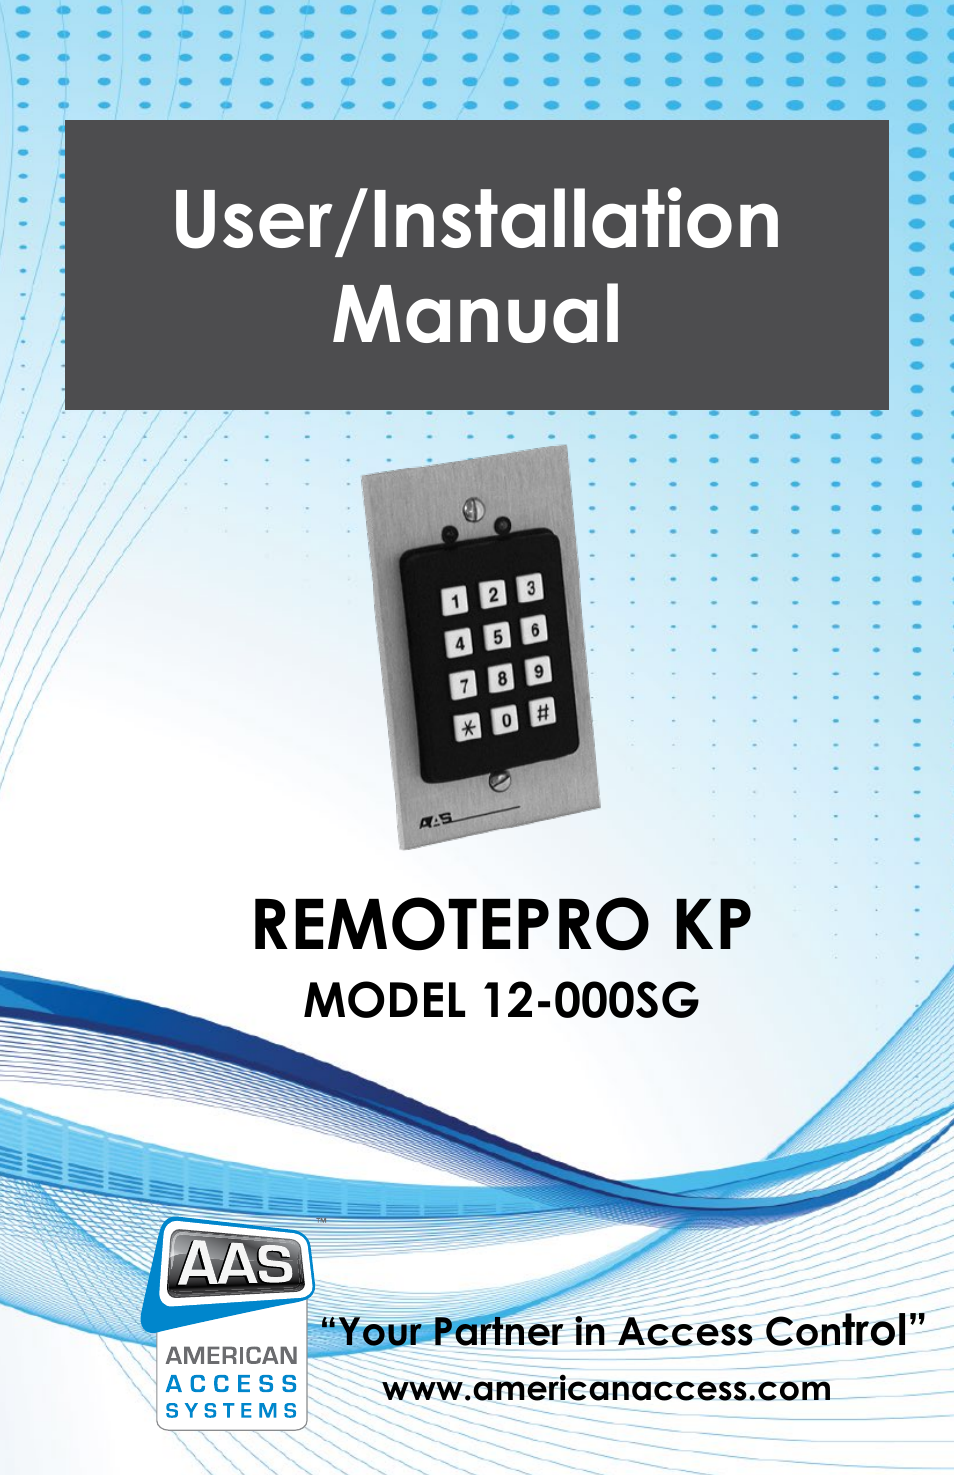 RemotePro KP 12-000sg